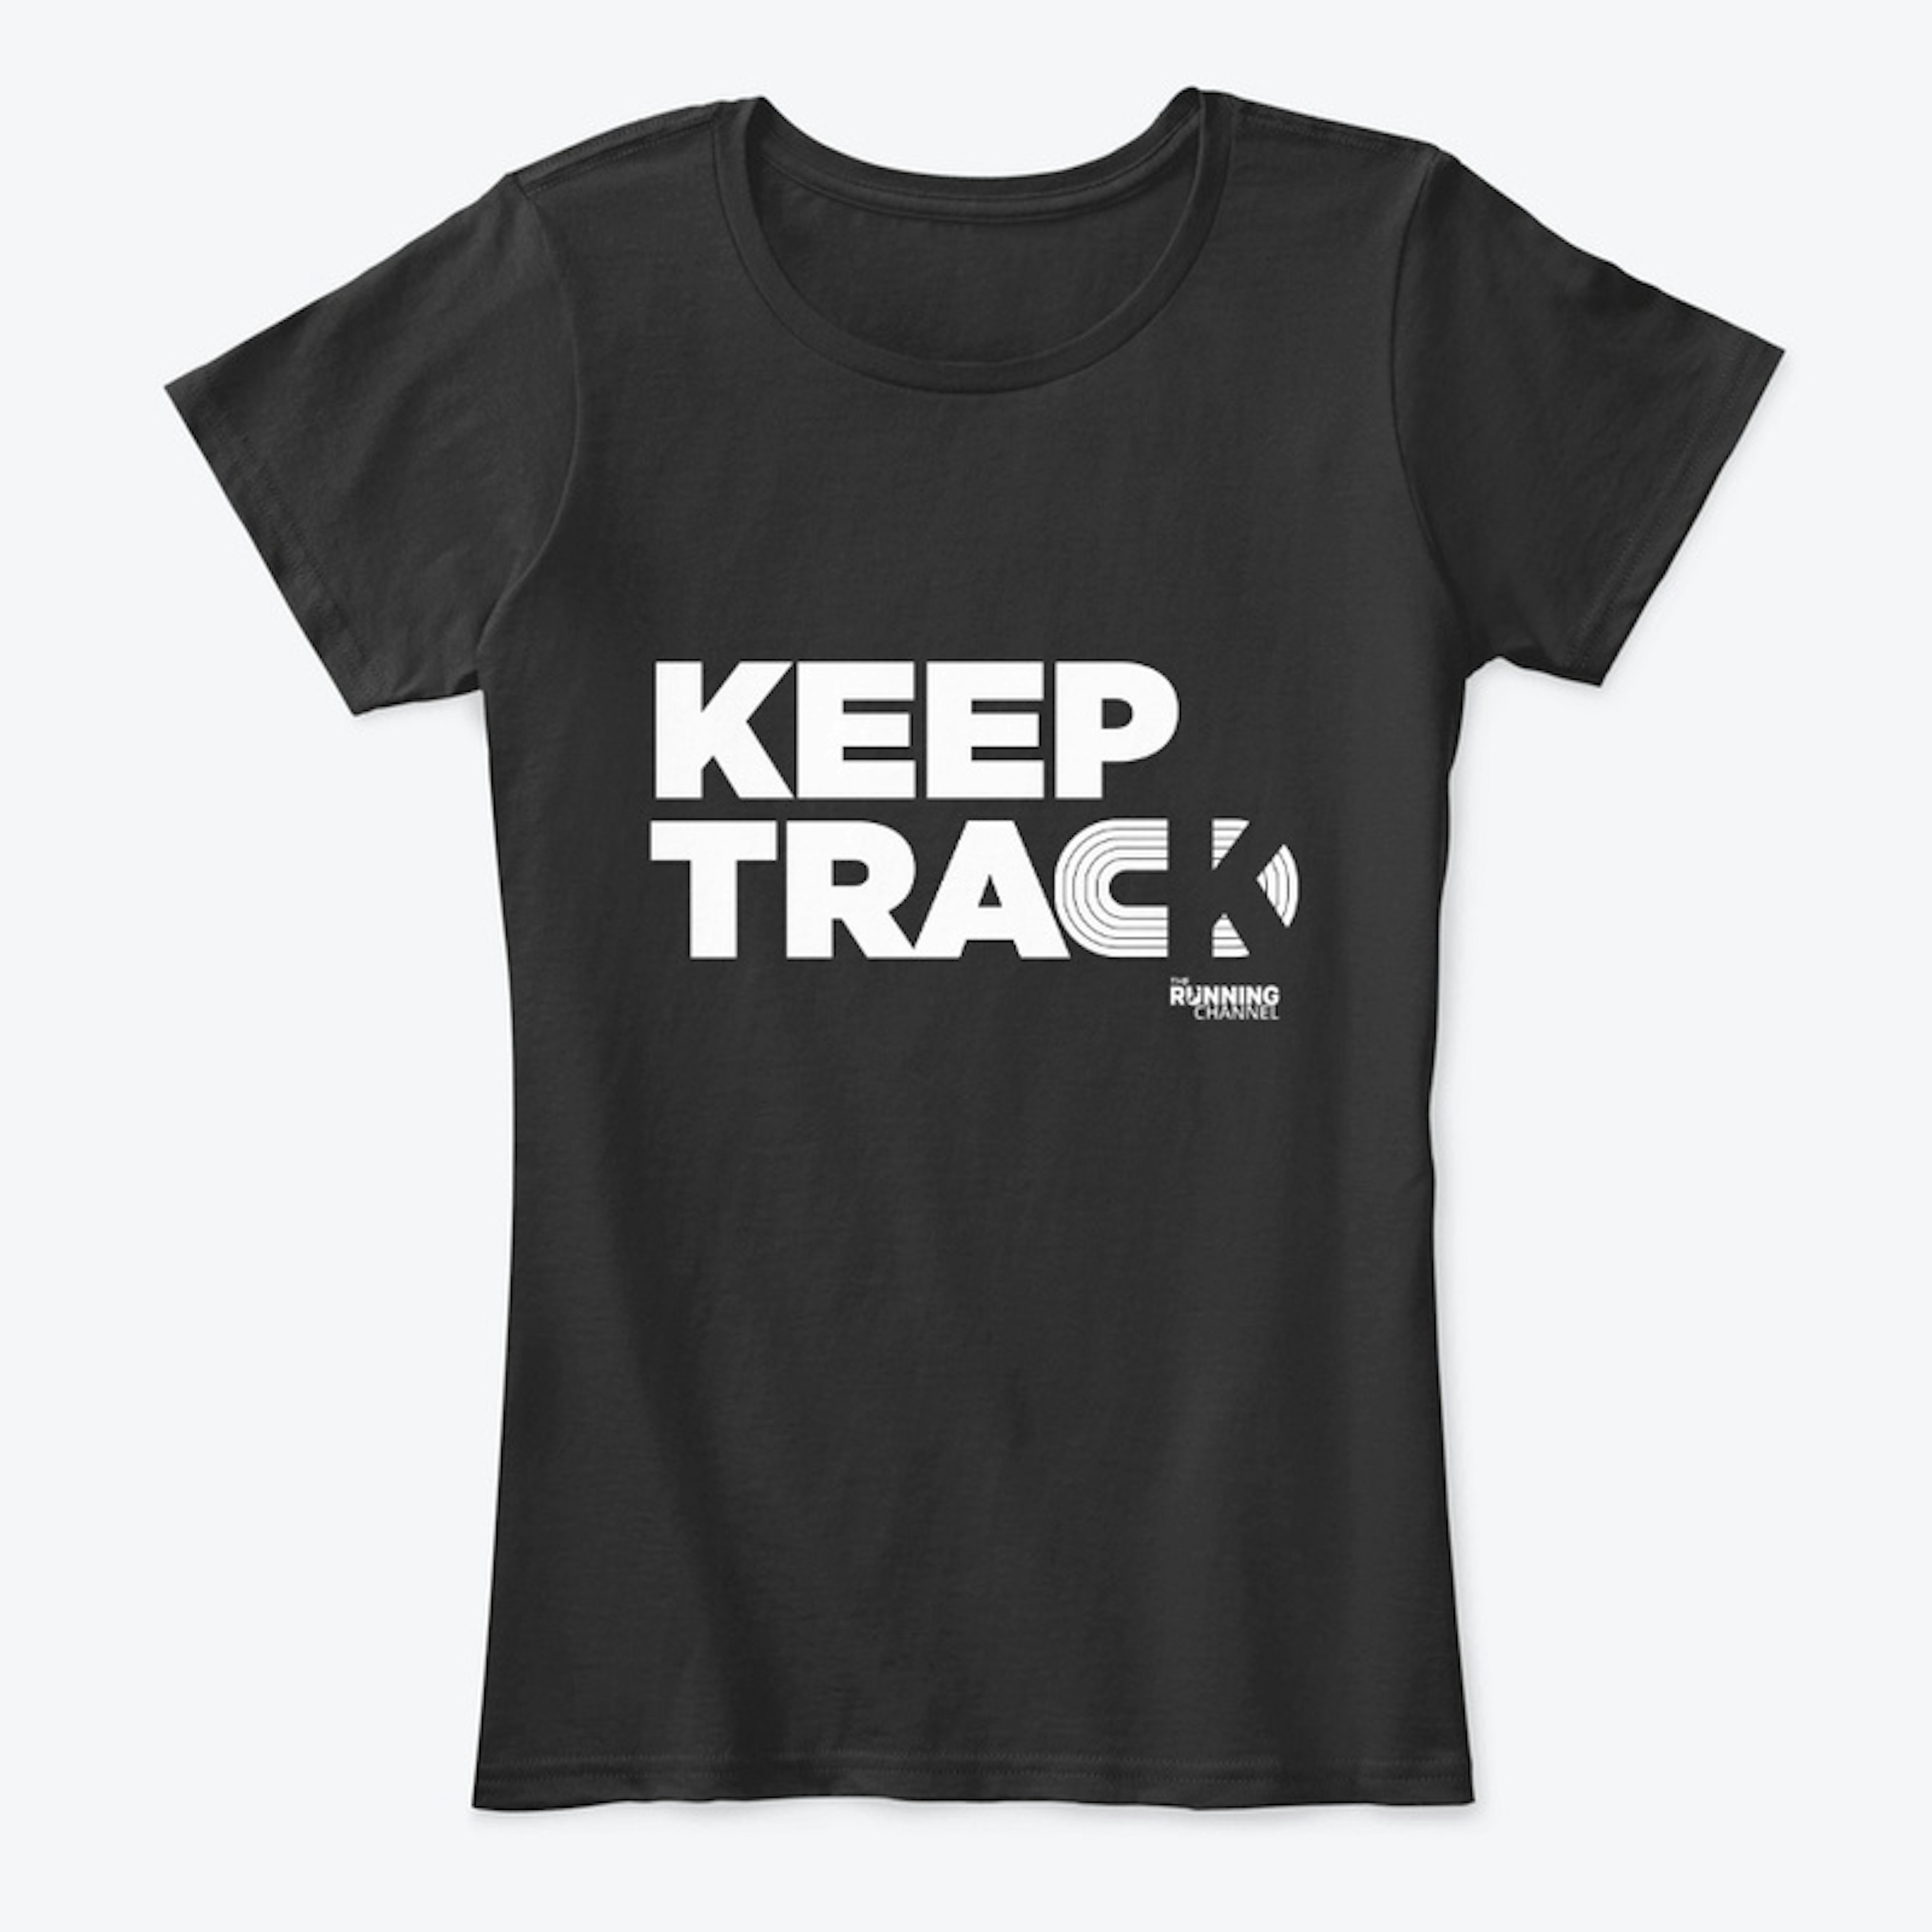 Keep Track Tee